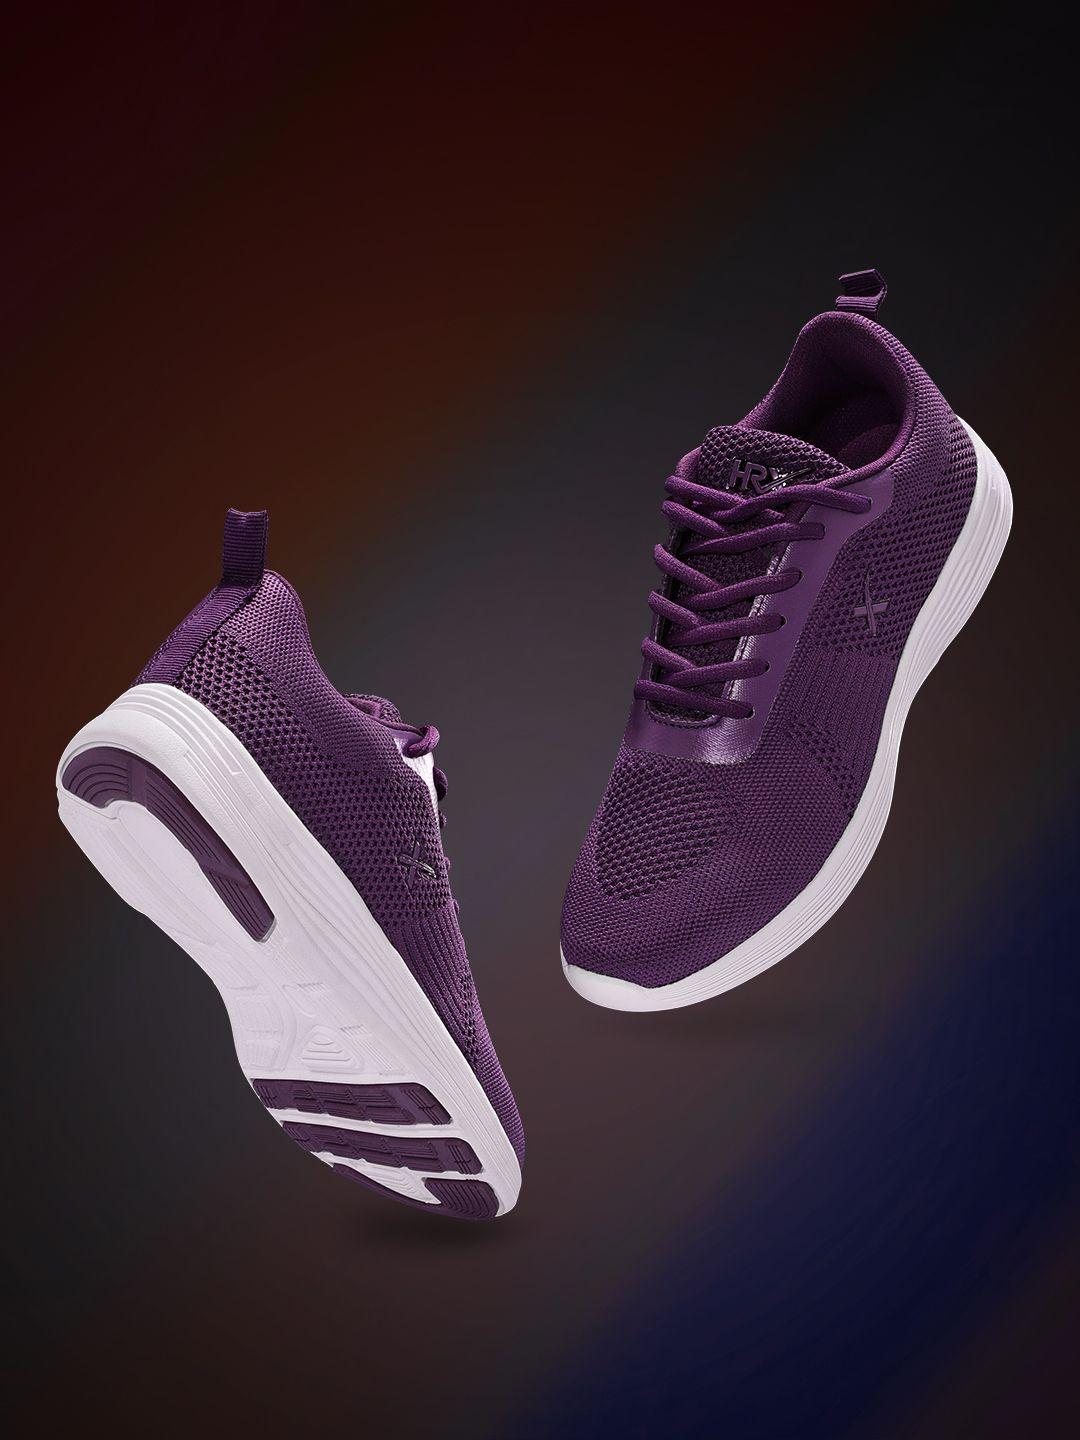 hrx-by-hrithik-roshan-women-purple-woven-design-front-runner-shoes